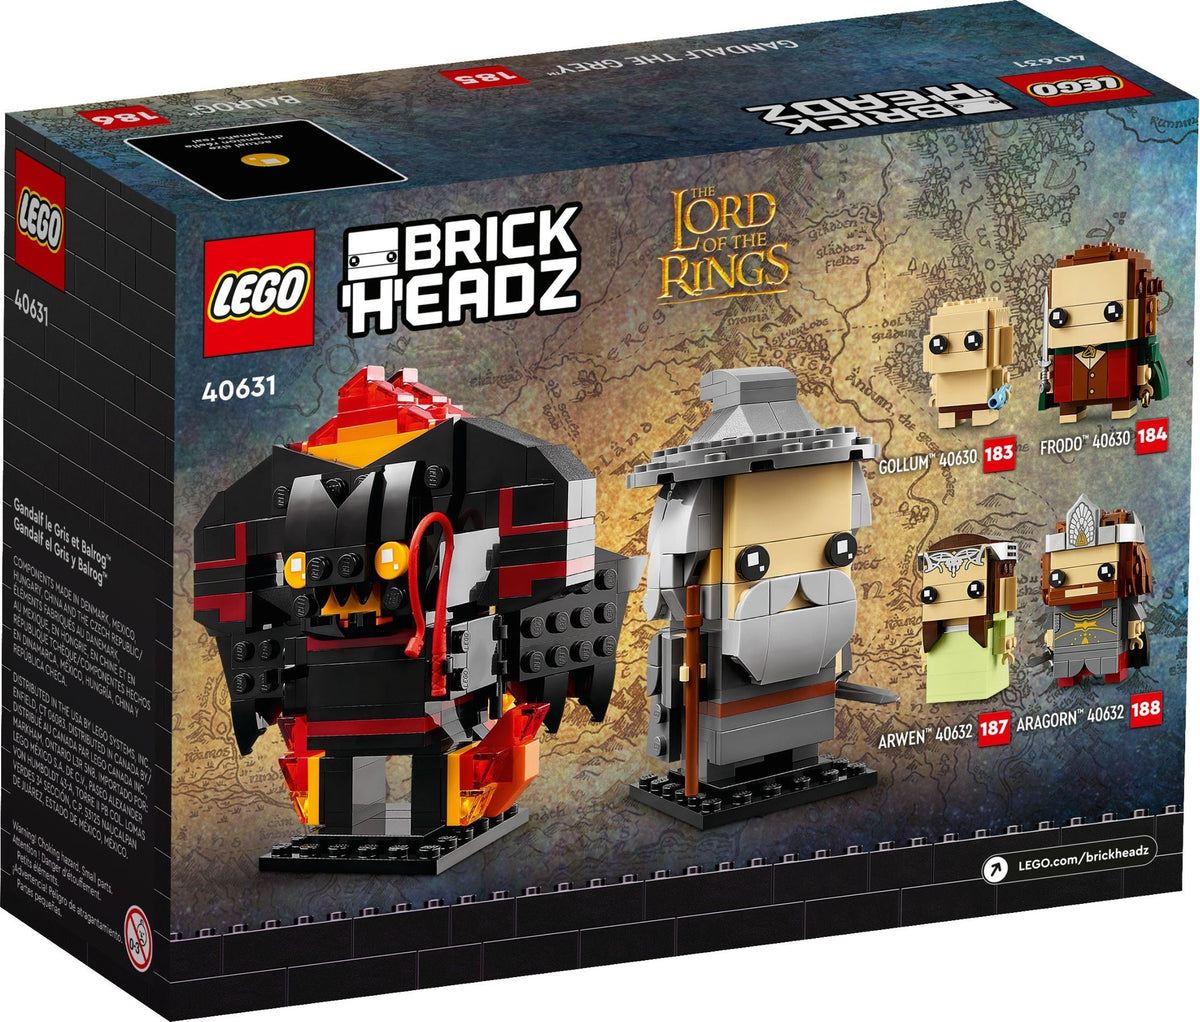 LEGO BrickHeadz Herr der Ringe 40631 Gandalf der Graue und Balrog